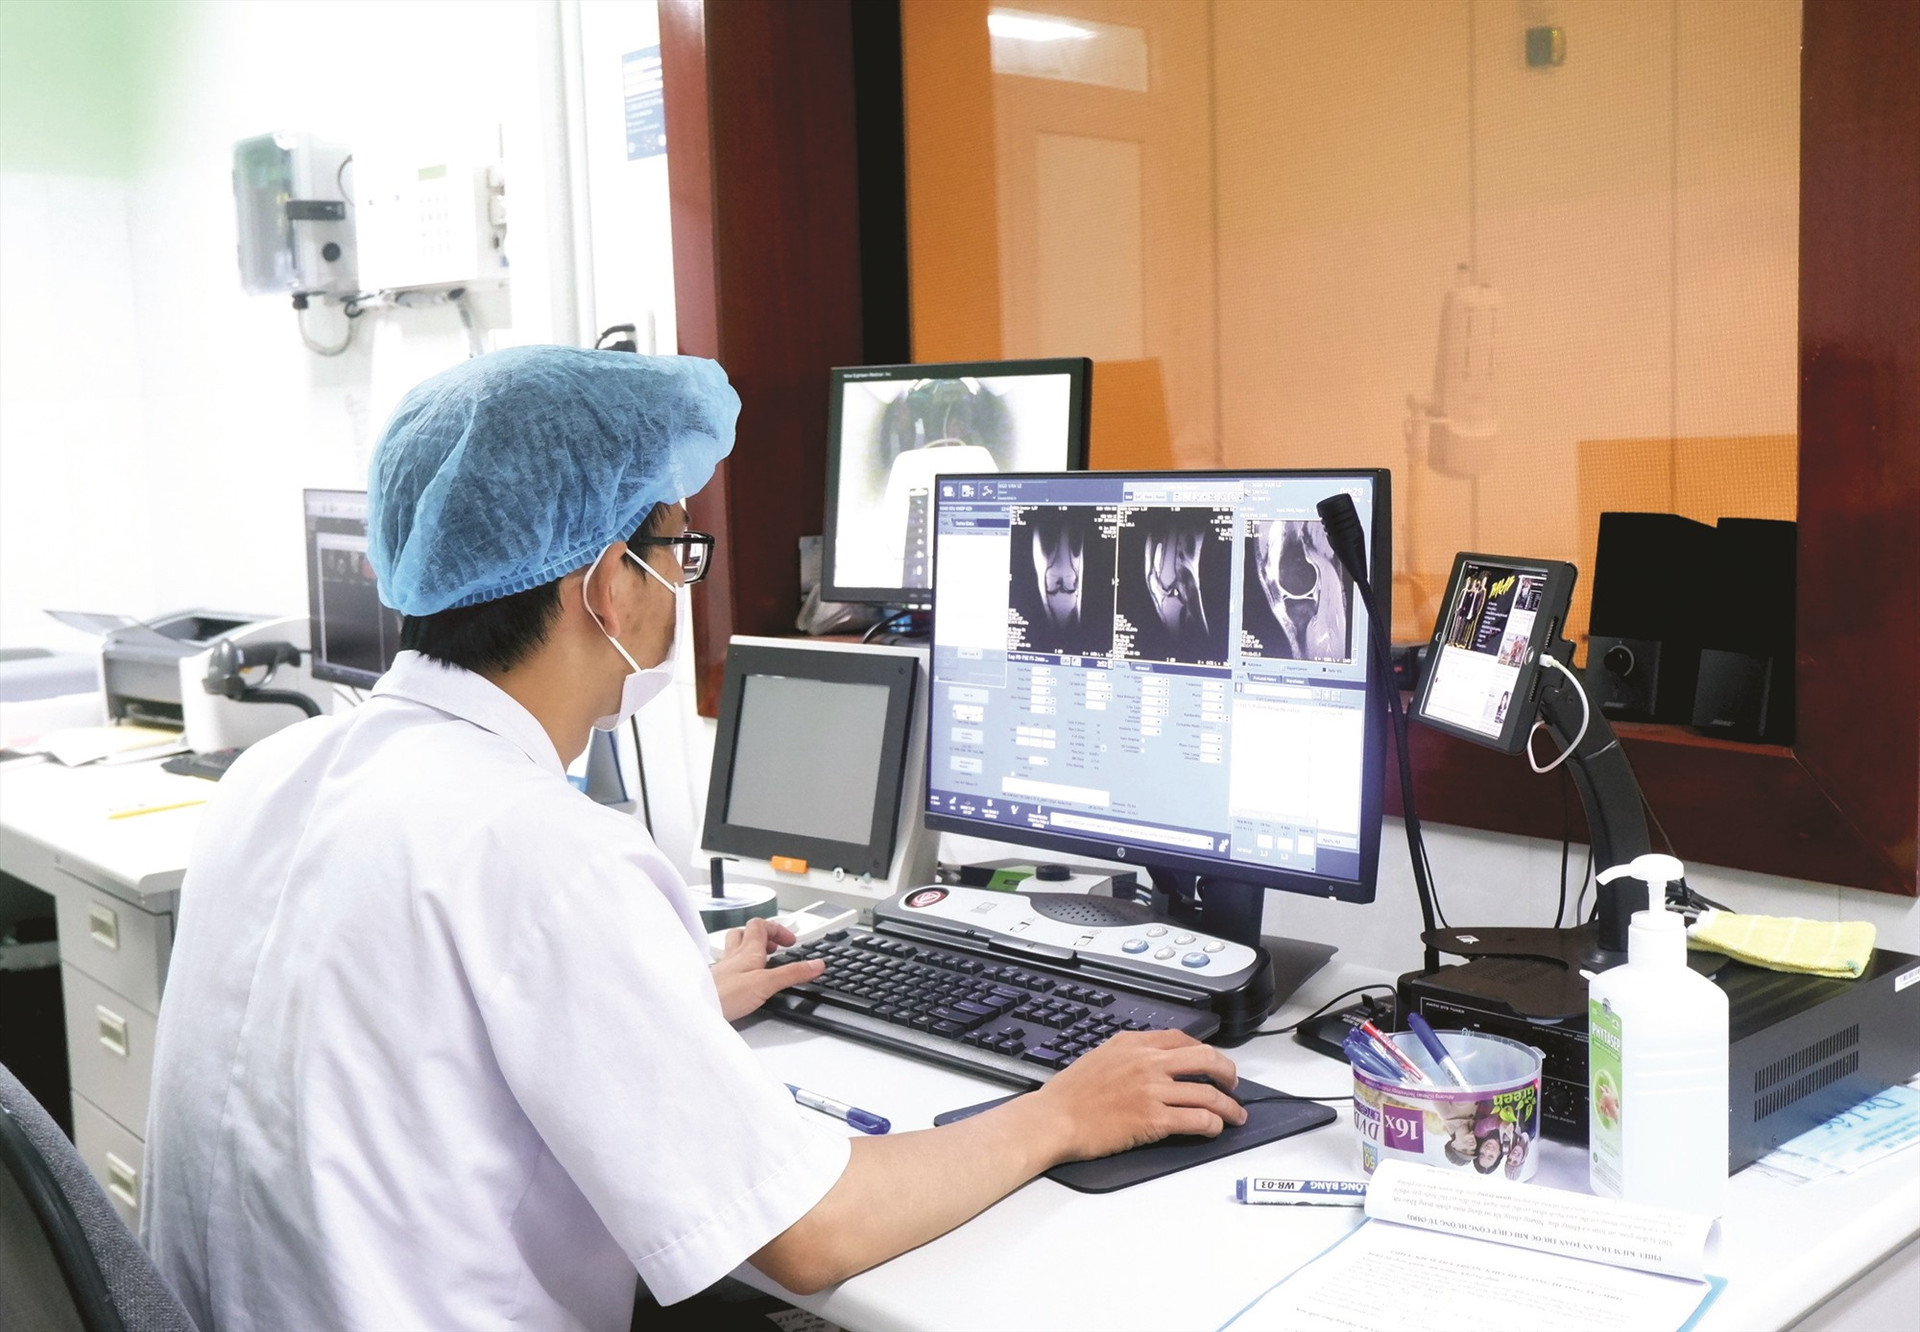 Bệnh viện Vĩnh Đức trang bị nhiều máy móc, thiết bị hiện đại để phát triển các chuyên khoa mũi nhọn.